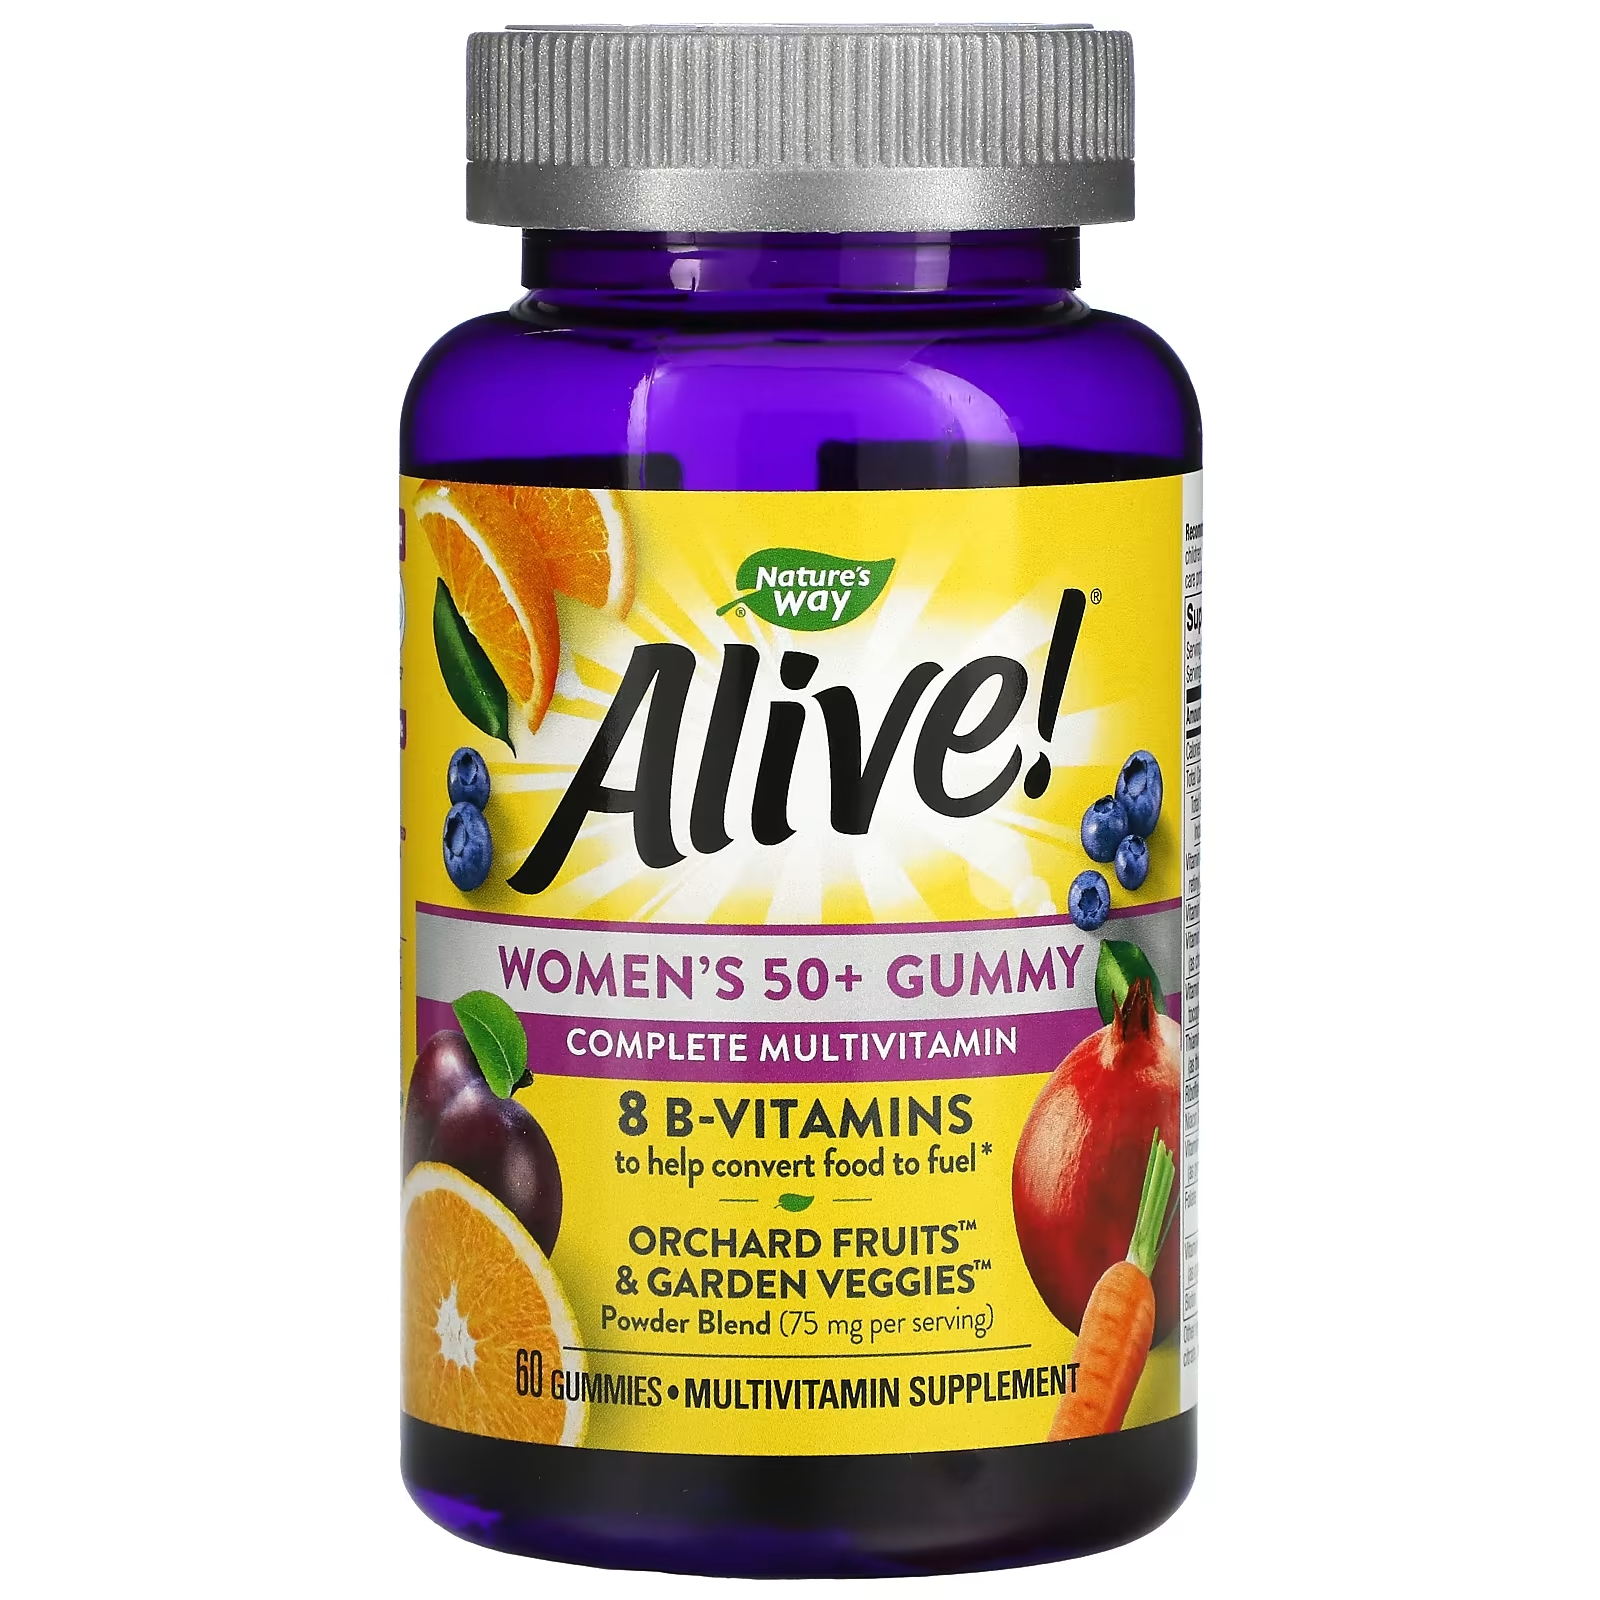 Жевательные Витамины для Женщин после 50 лет Nature's Way со вкусом фруктов, 60 таблеток жевательные витамины nature s way для женщин старше 50 лет 75 таблеток